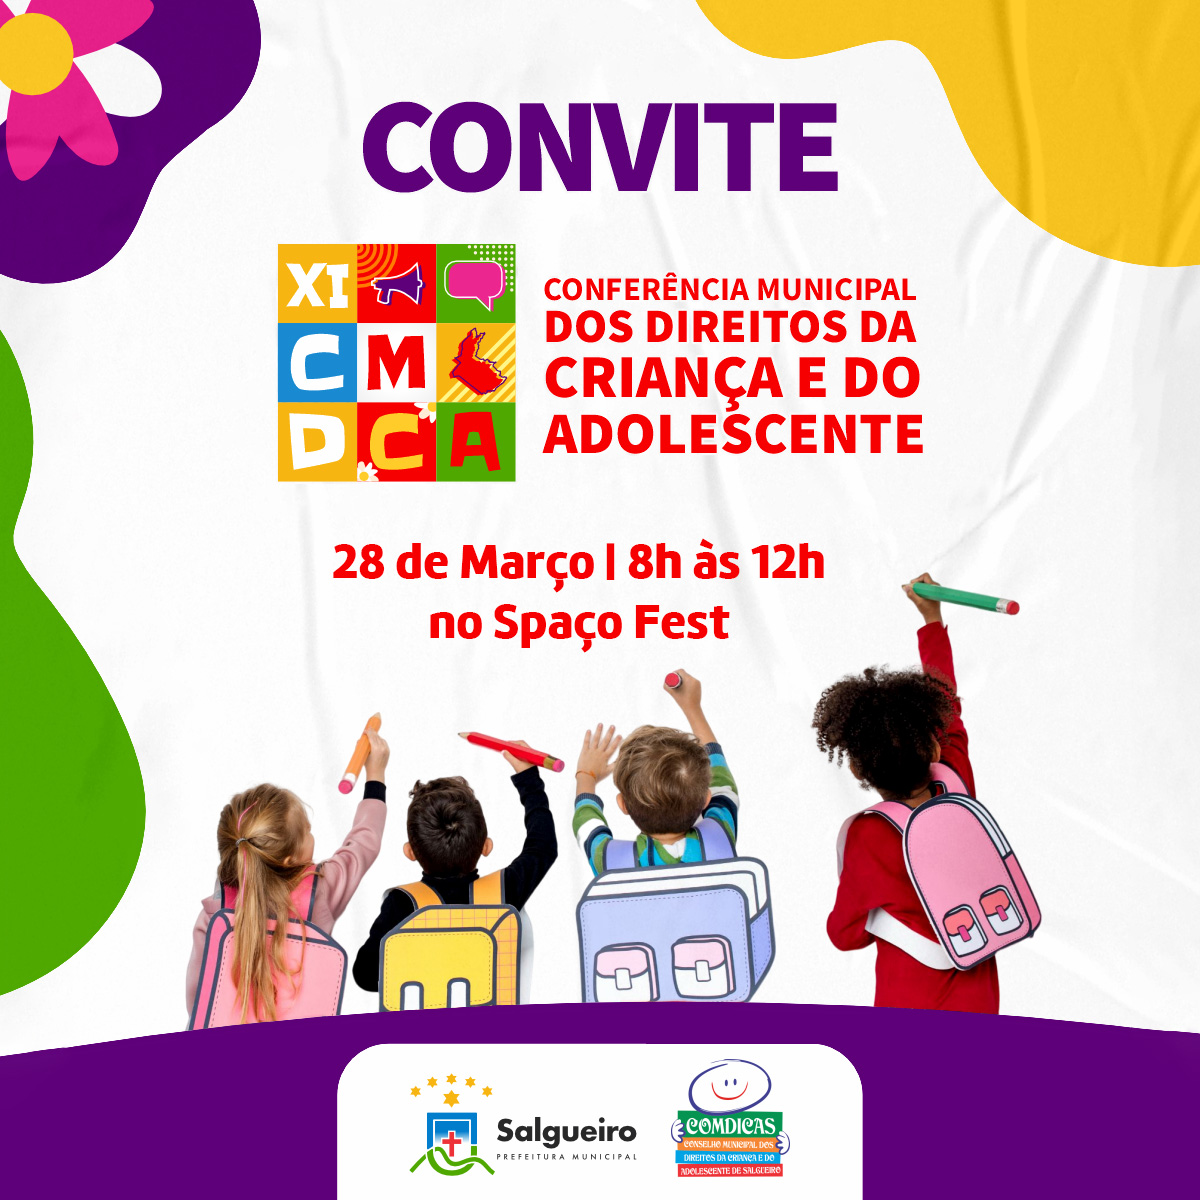 Prefeitura de Salgueiro convida todos a participar da XI Conferência Municipal dos Direitos da Criança e do Adolescente